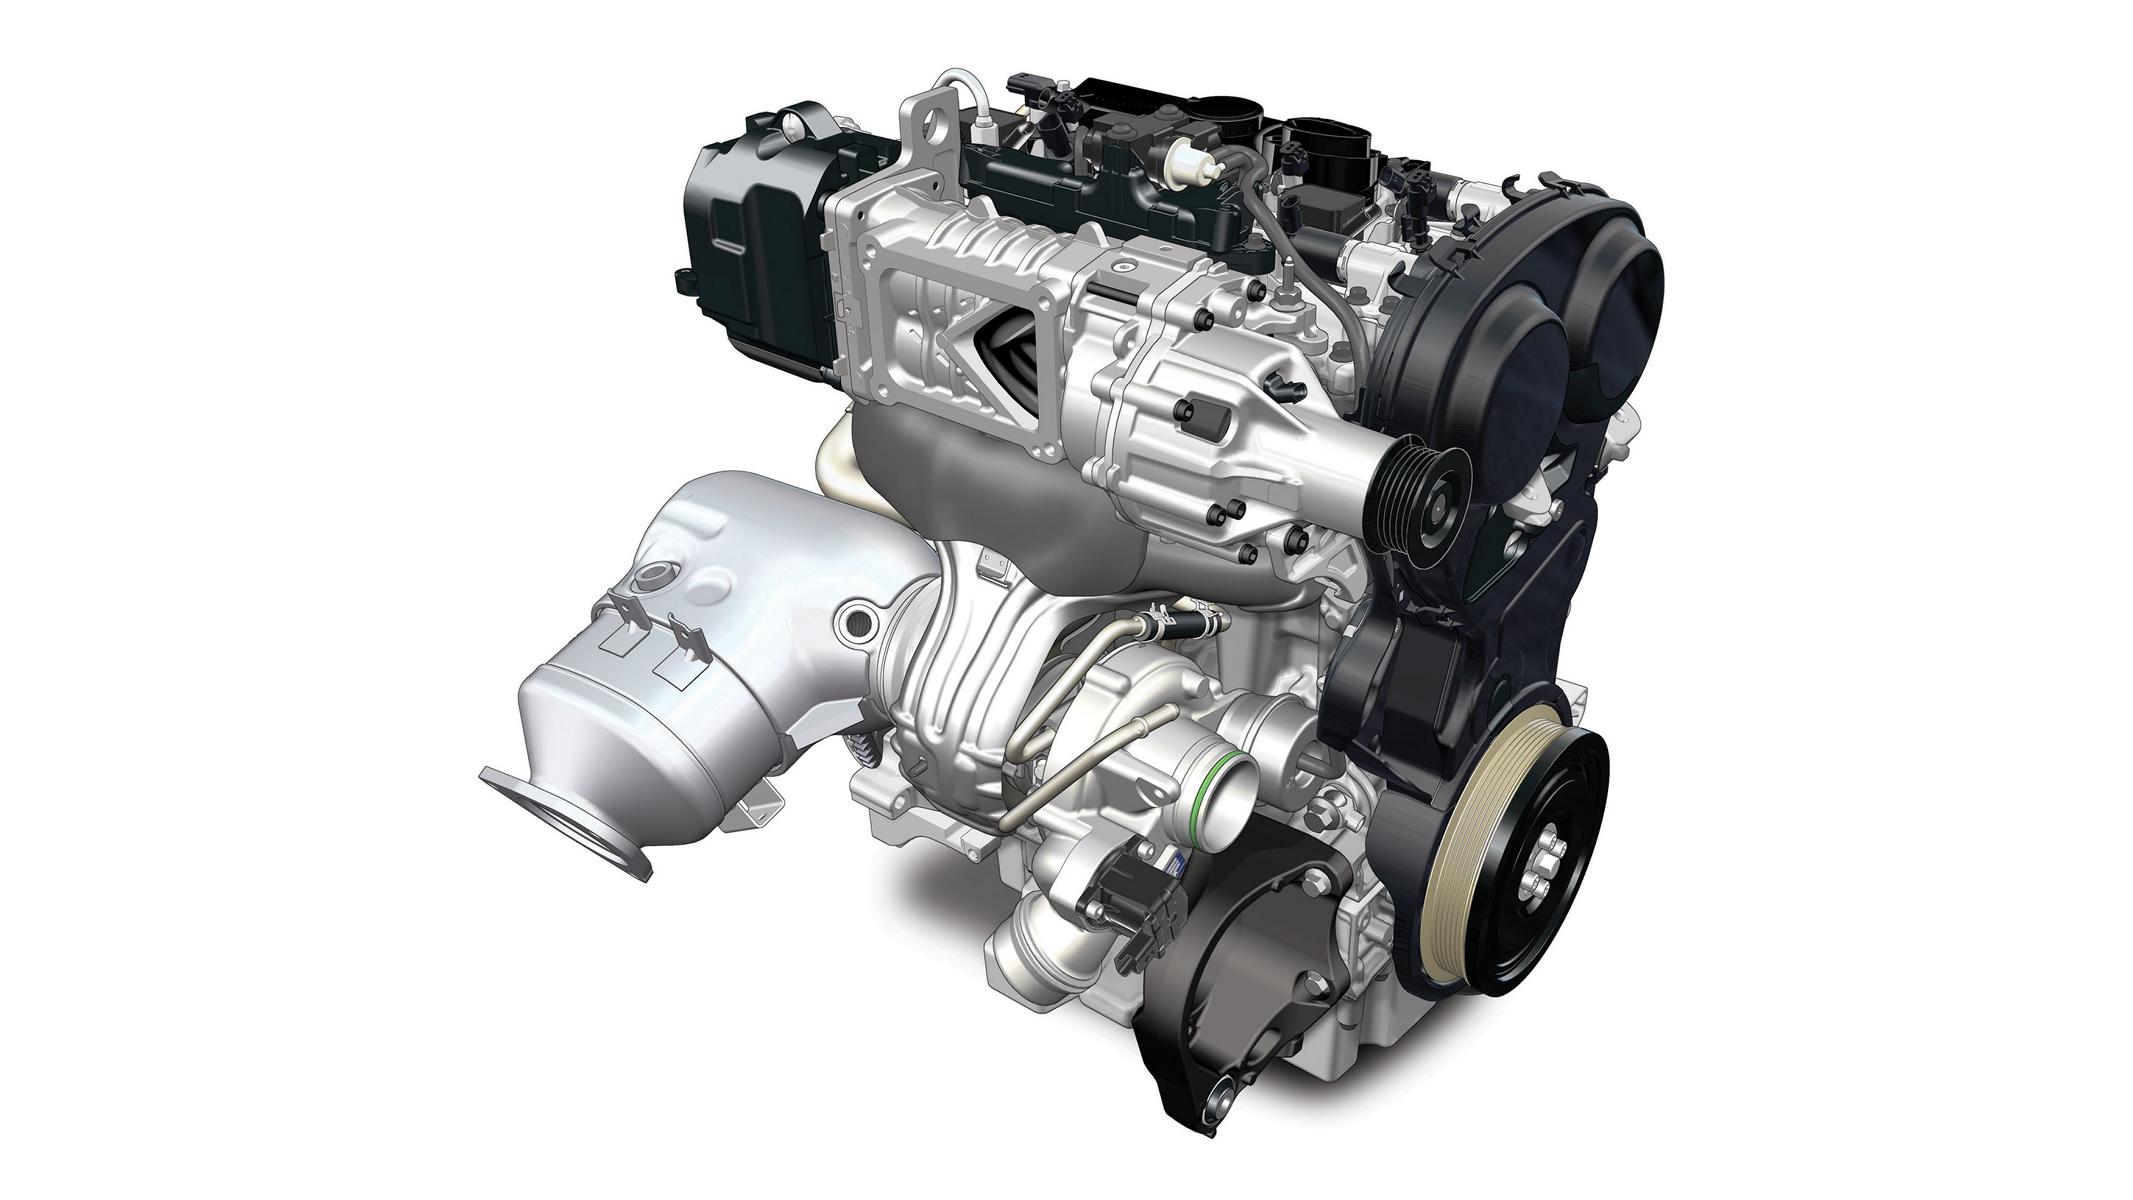 K1600 201650 Ausgezeichnetes Triebwerk Polestar Motor mit Ward s 10 Best Engines Award